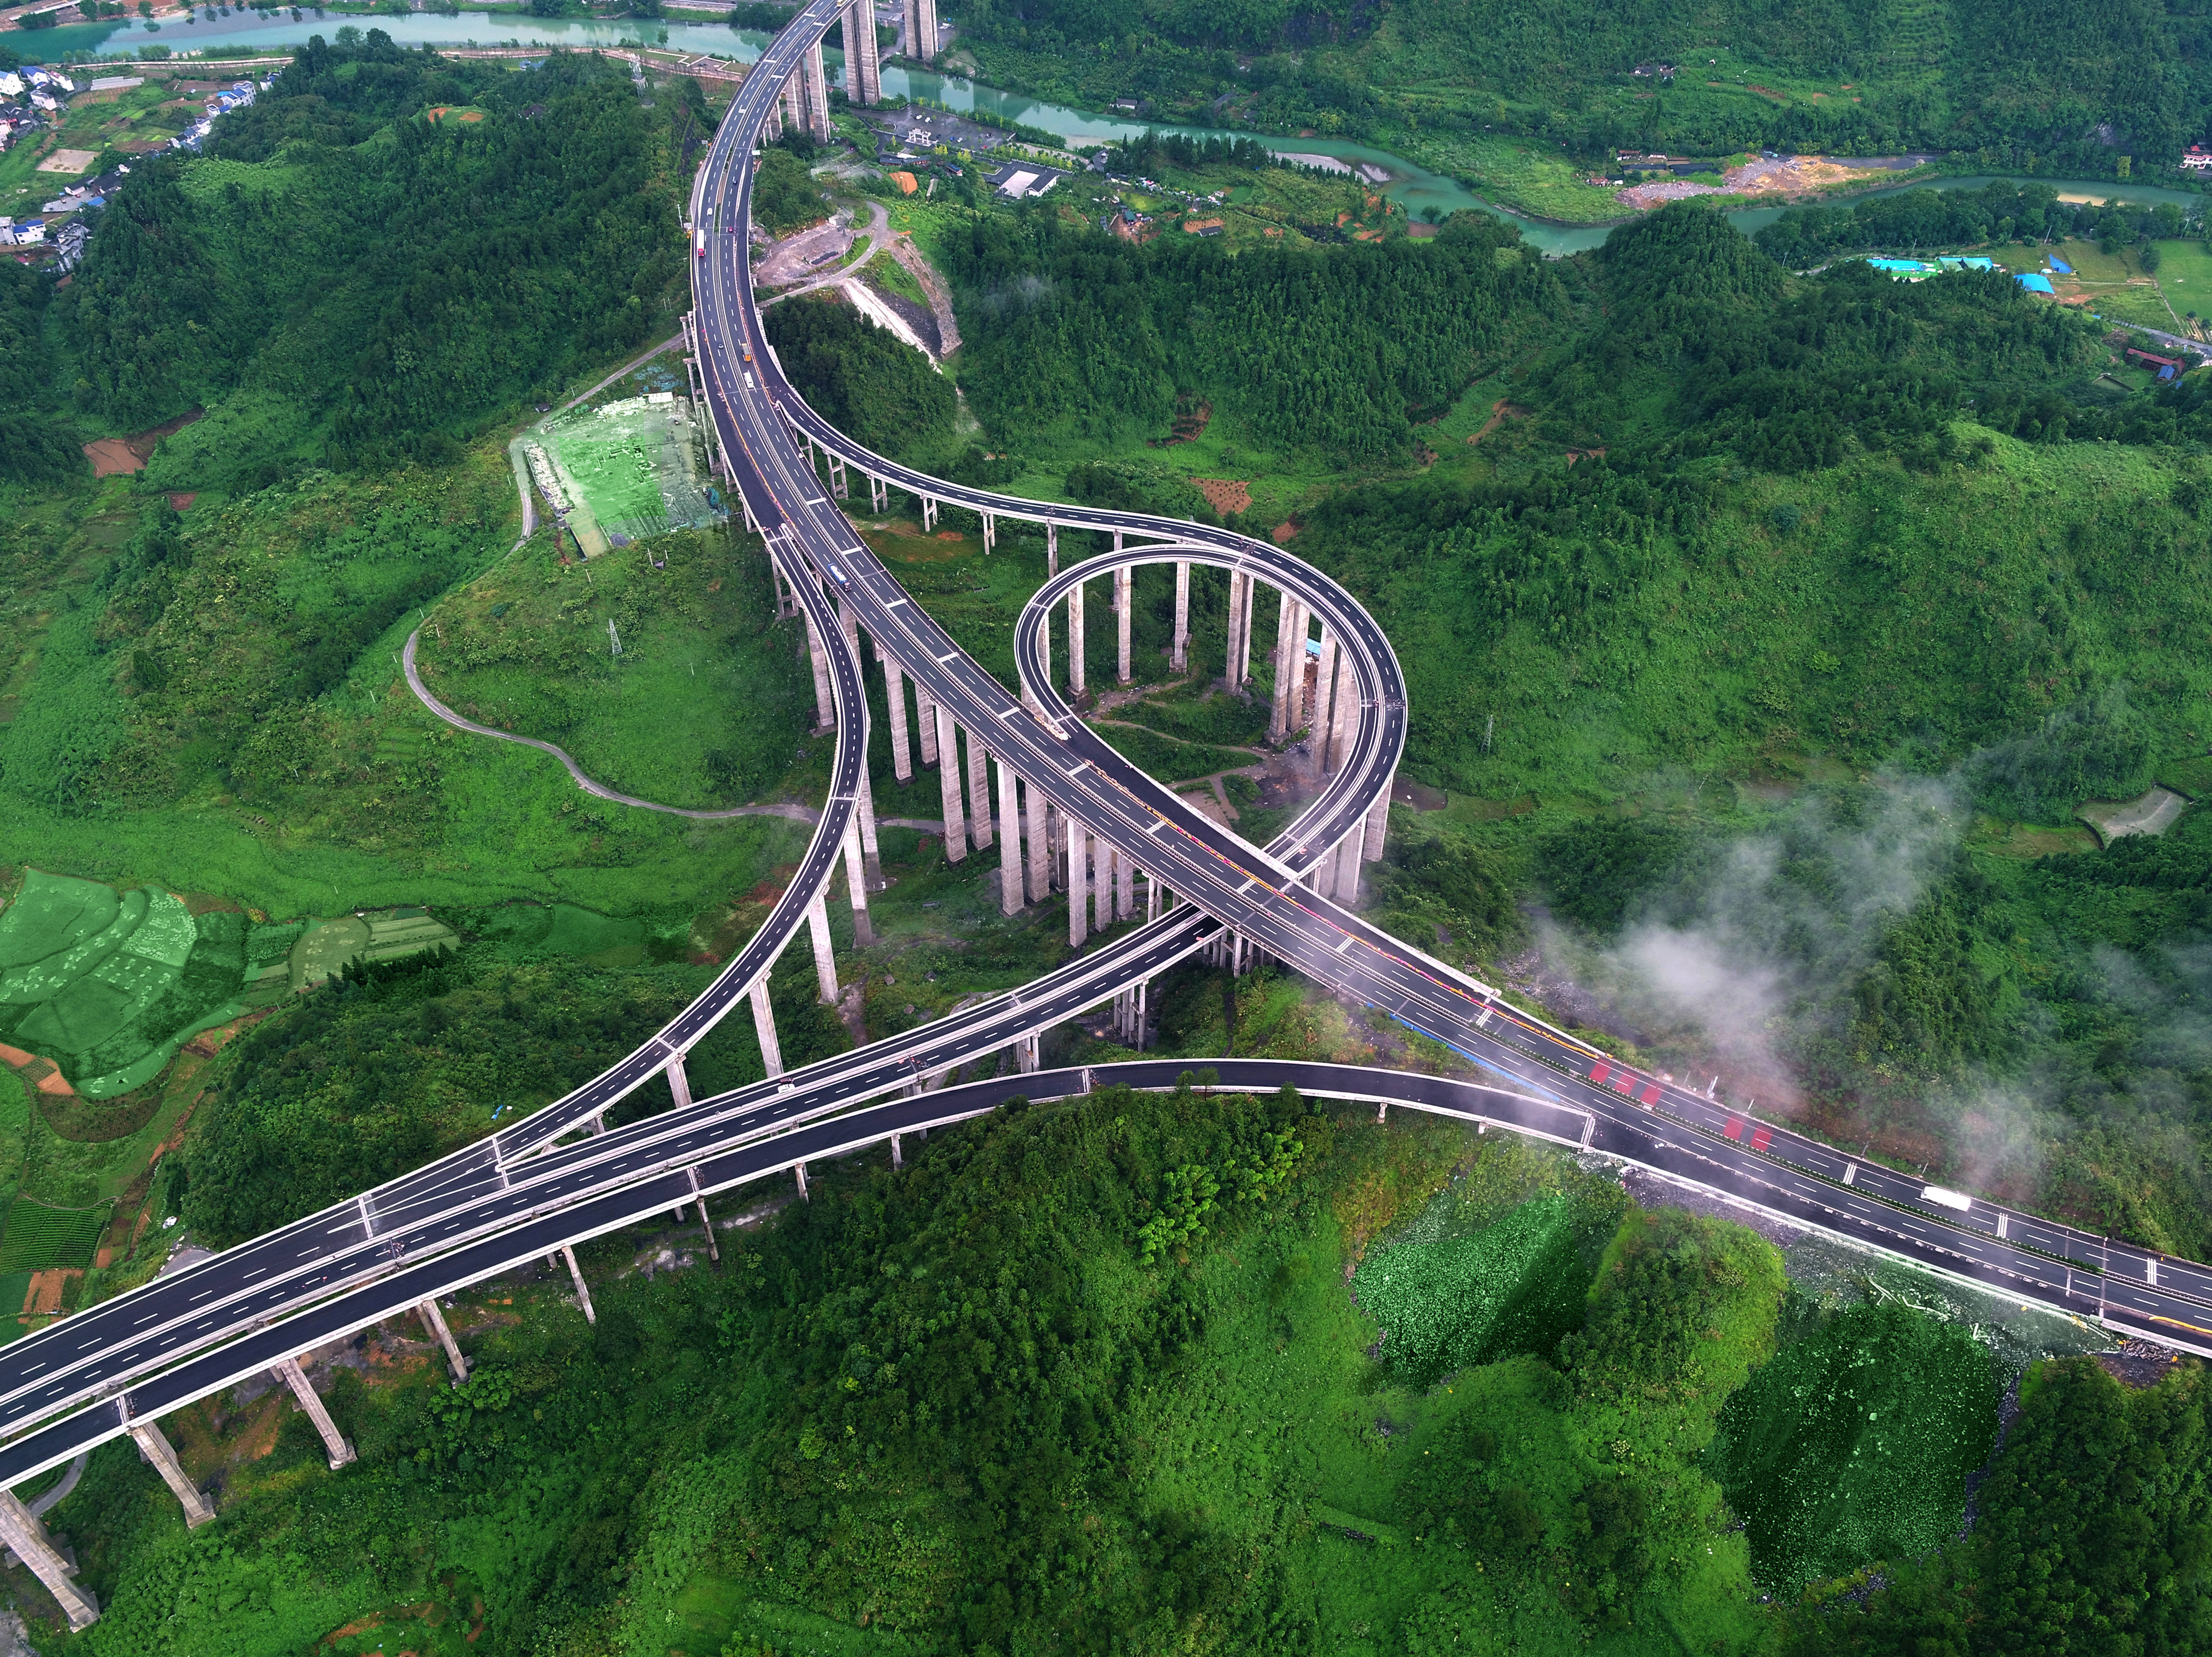 石家寨互通立交桥,位于湖南省吉首市寨阳乡境内,是永吉高速公路最大的